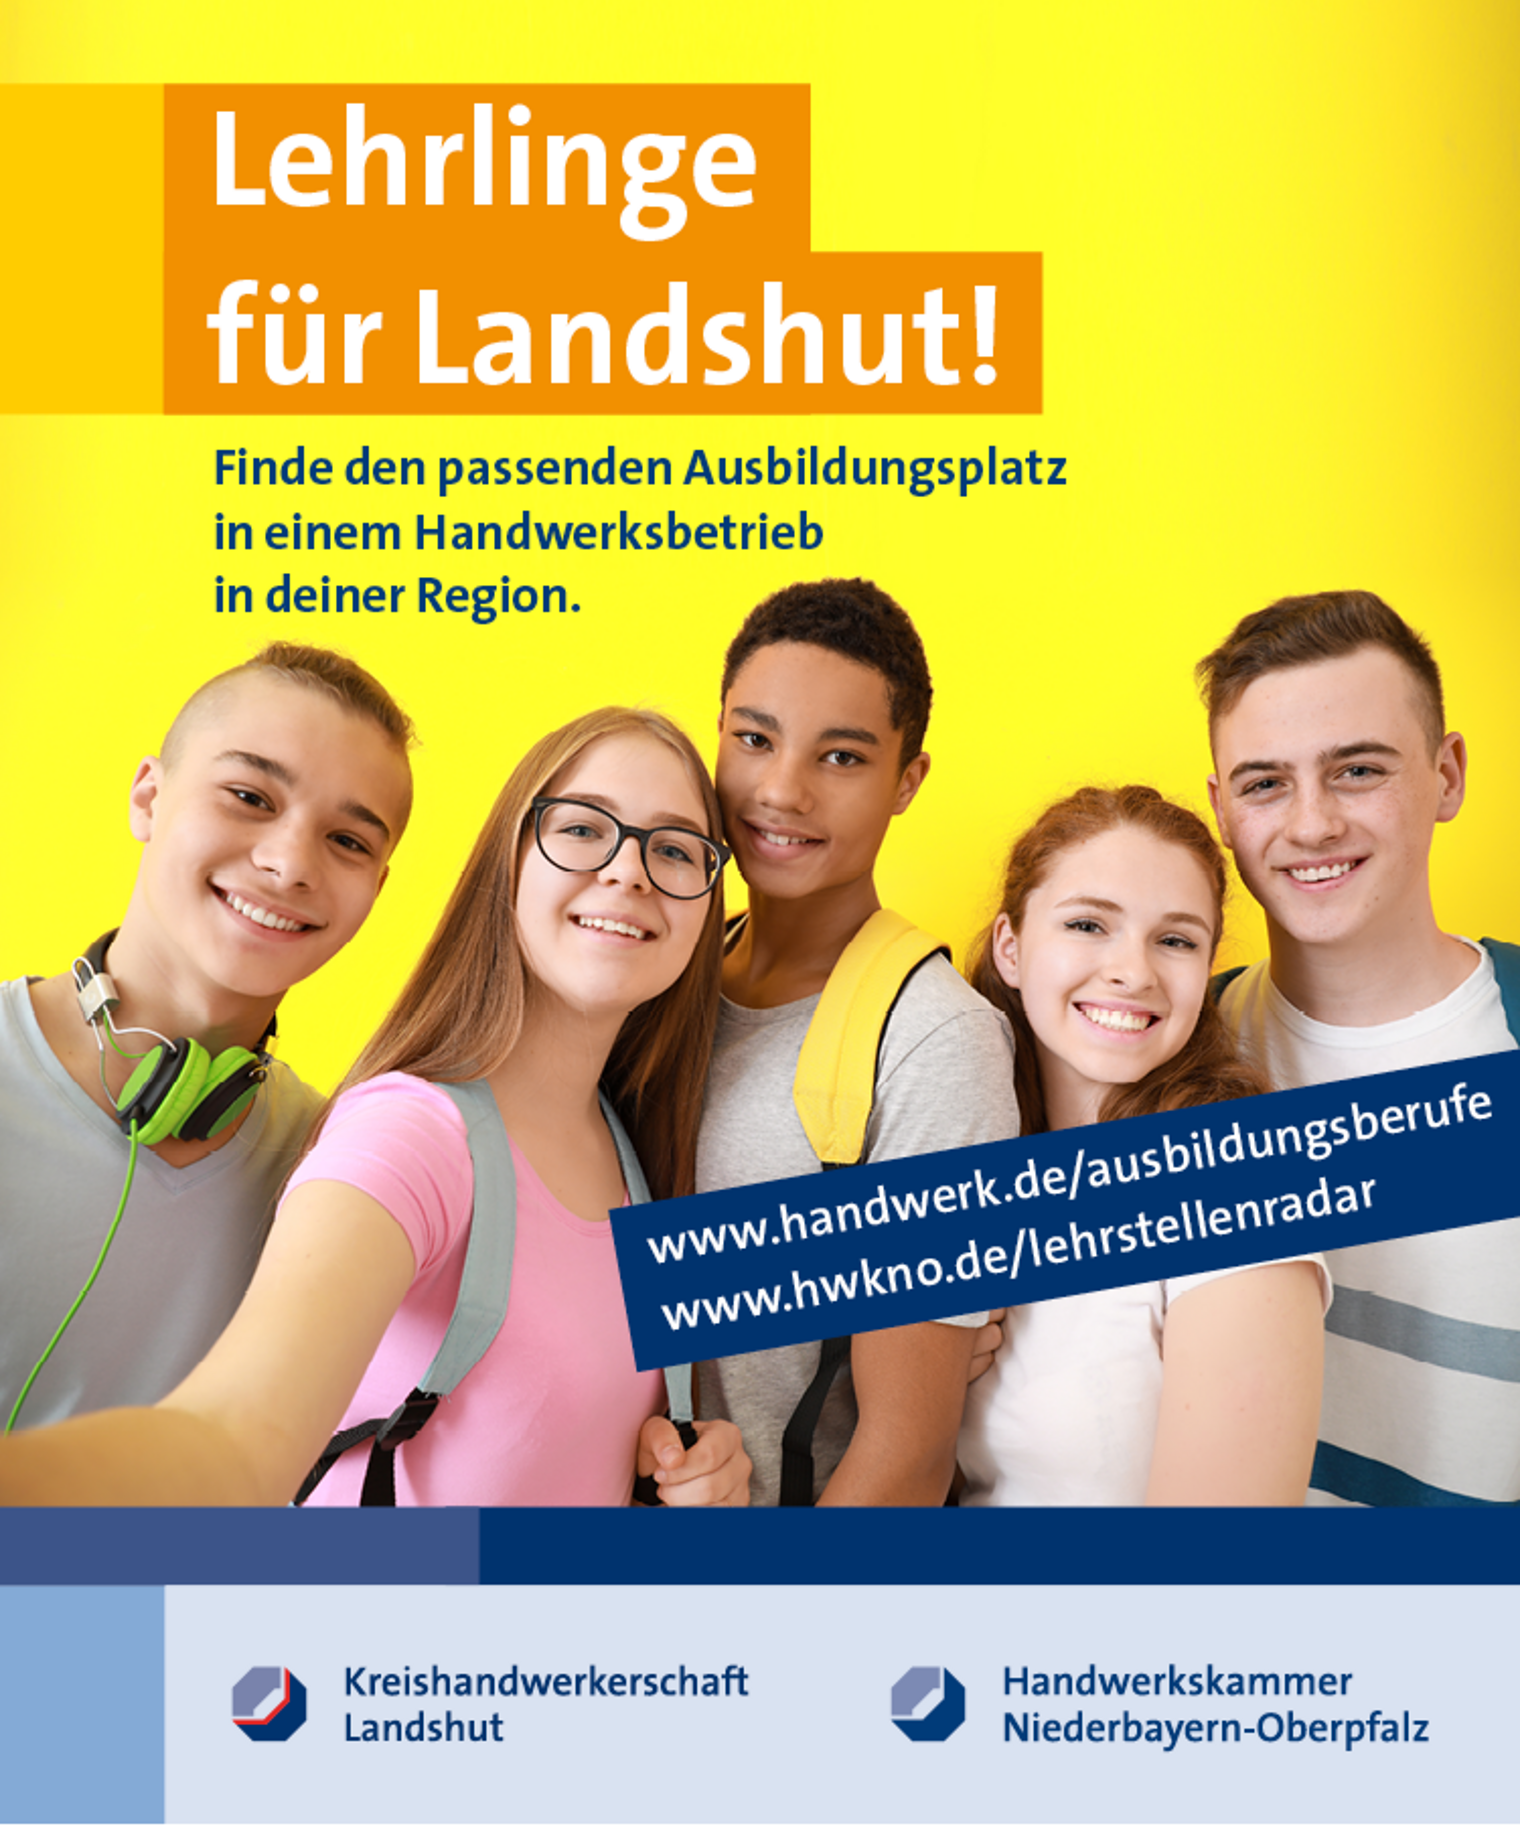 Aktionswoche Lehrlinge für Landshut